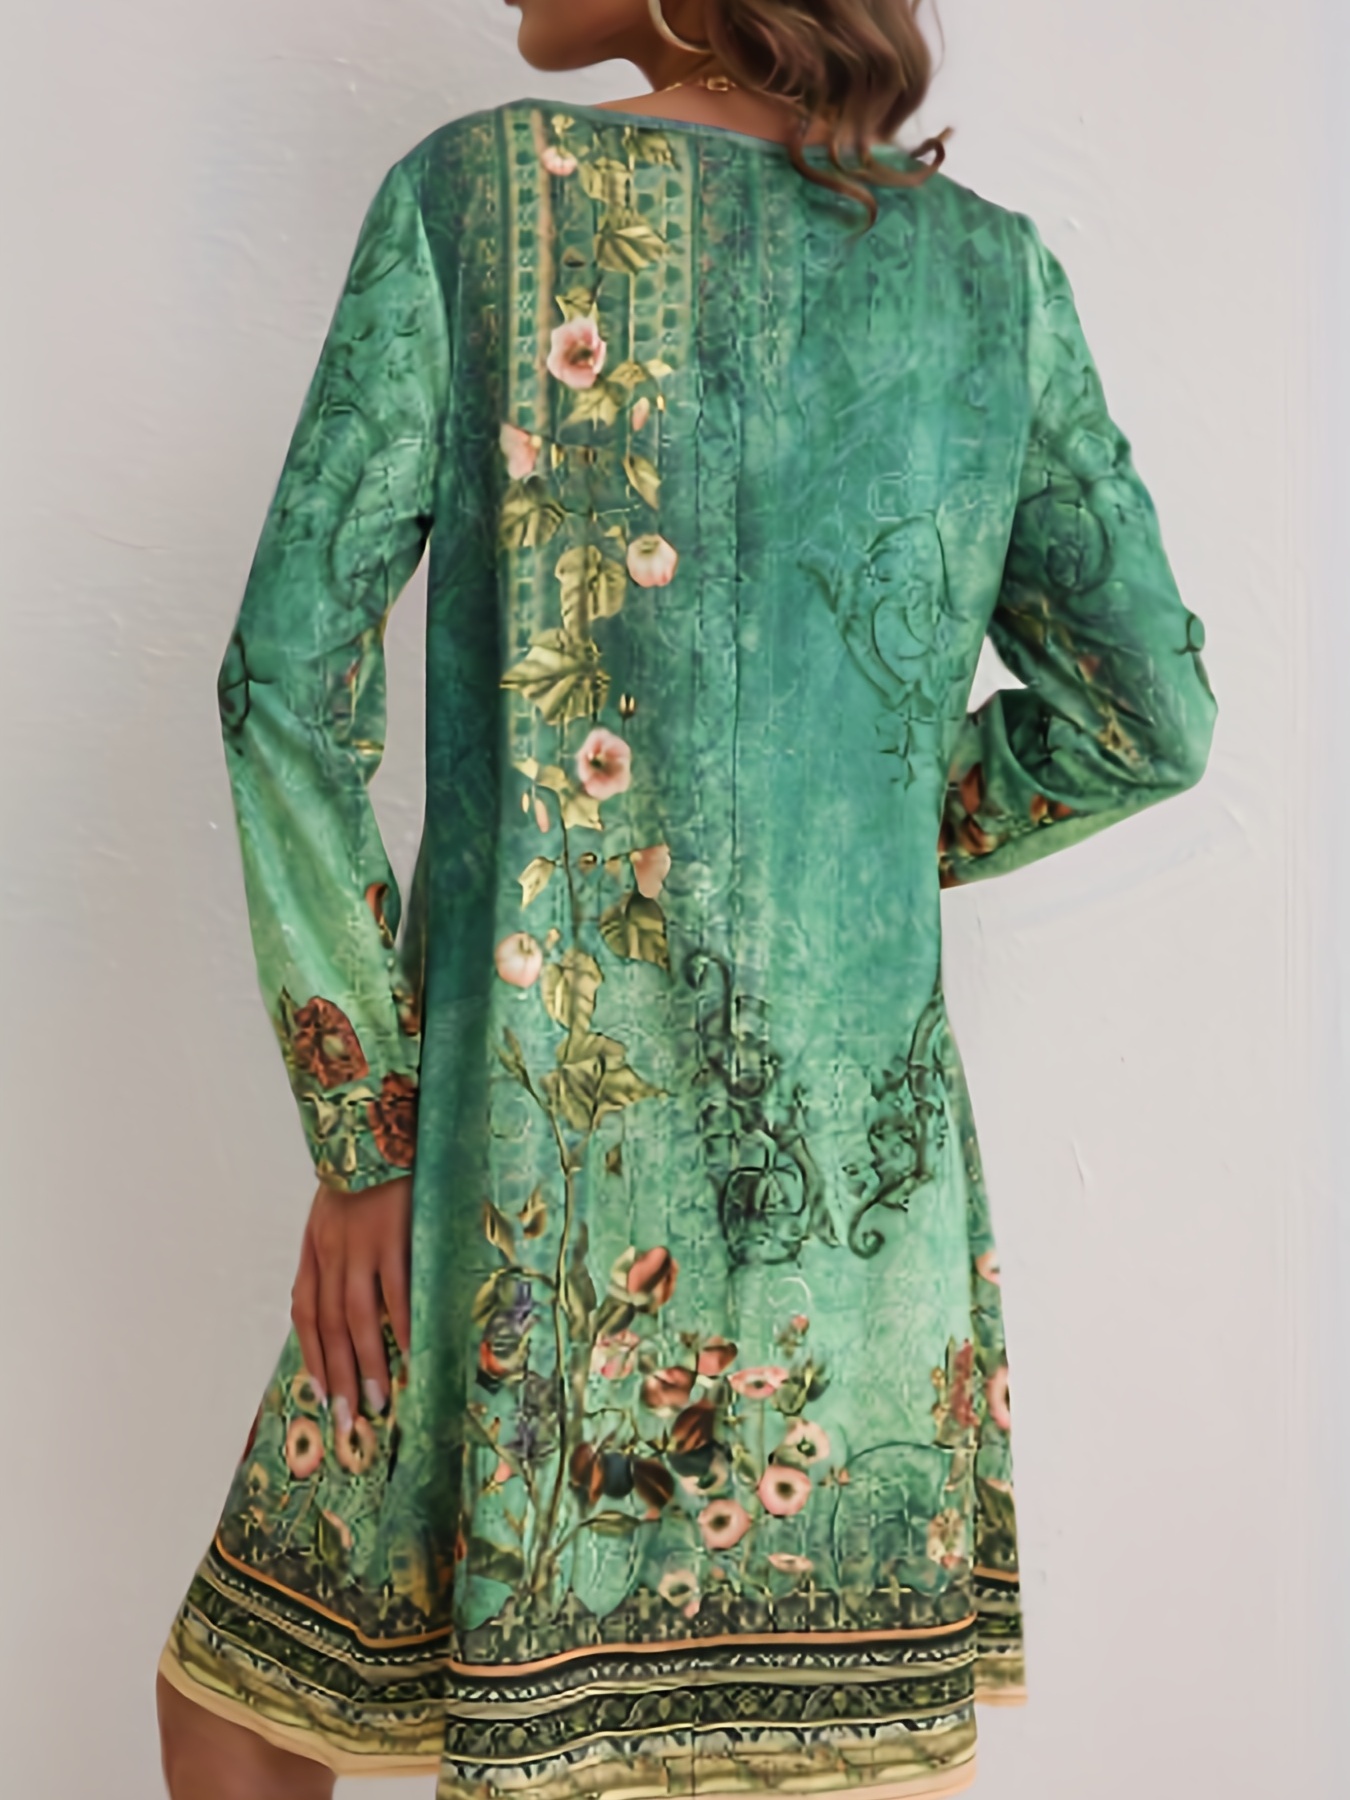 floral print v neck dress elegant long sleeve dress for spring summer womens clothing details 0